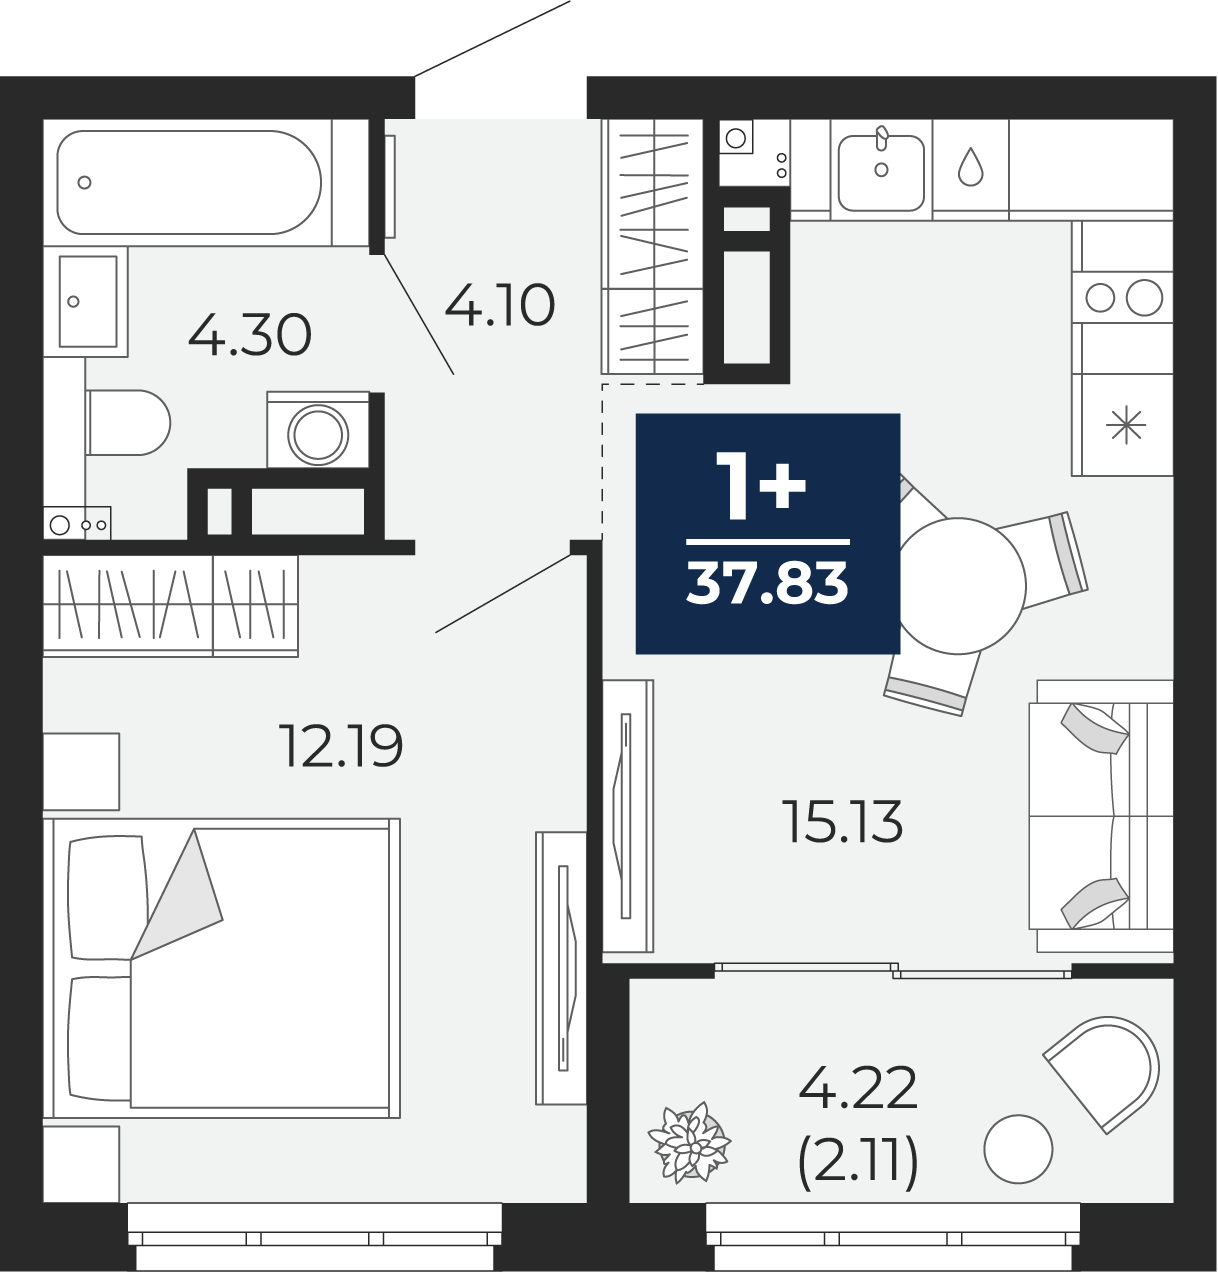 Квартира № 248, 1-комнатная, 37.83 кв. м, 7 этаж